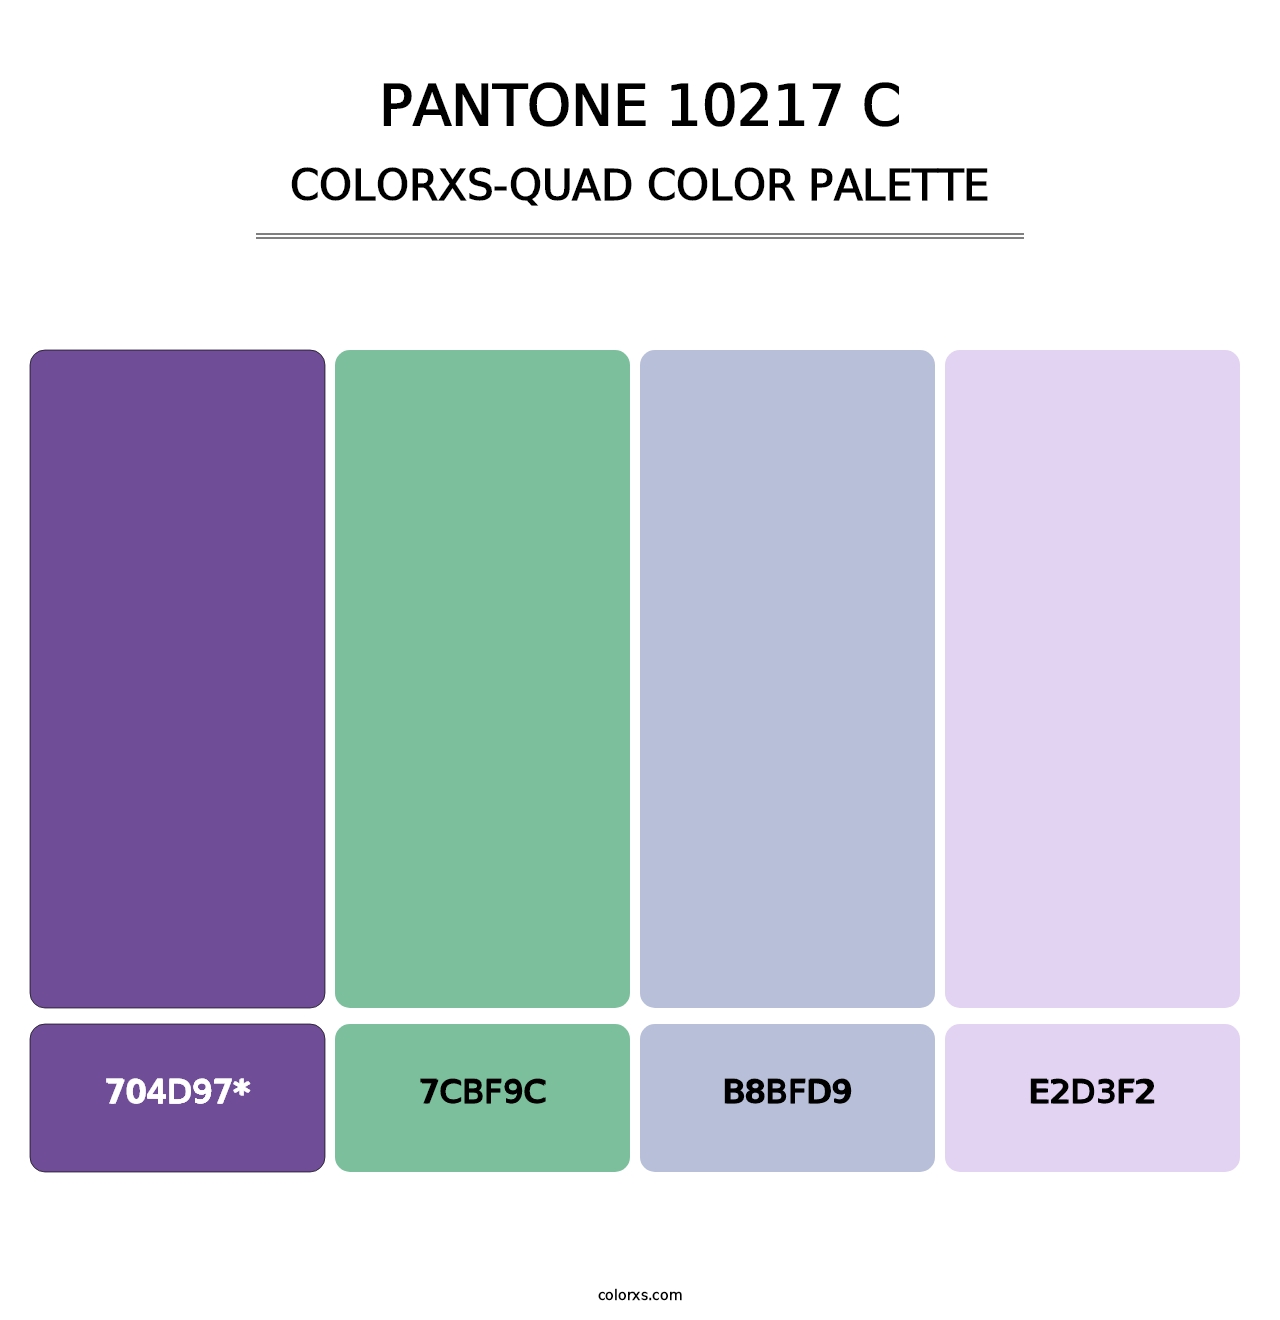 PANTONE 10217 C - Colorxs Quad Palette